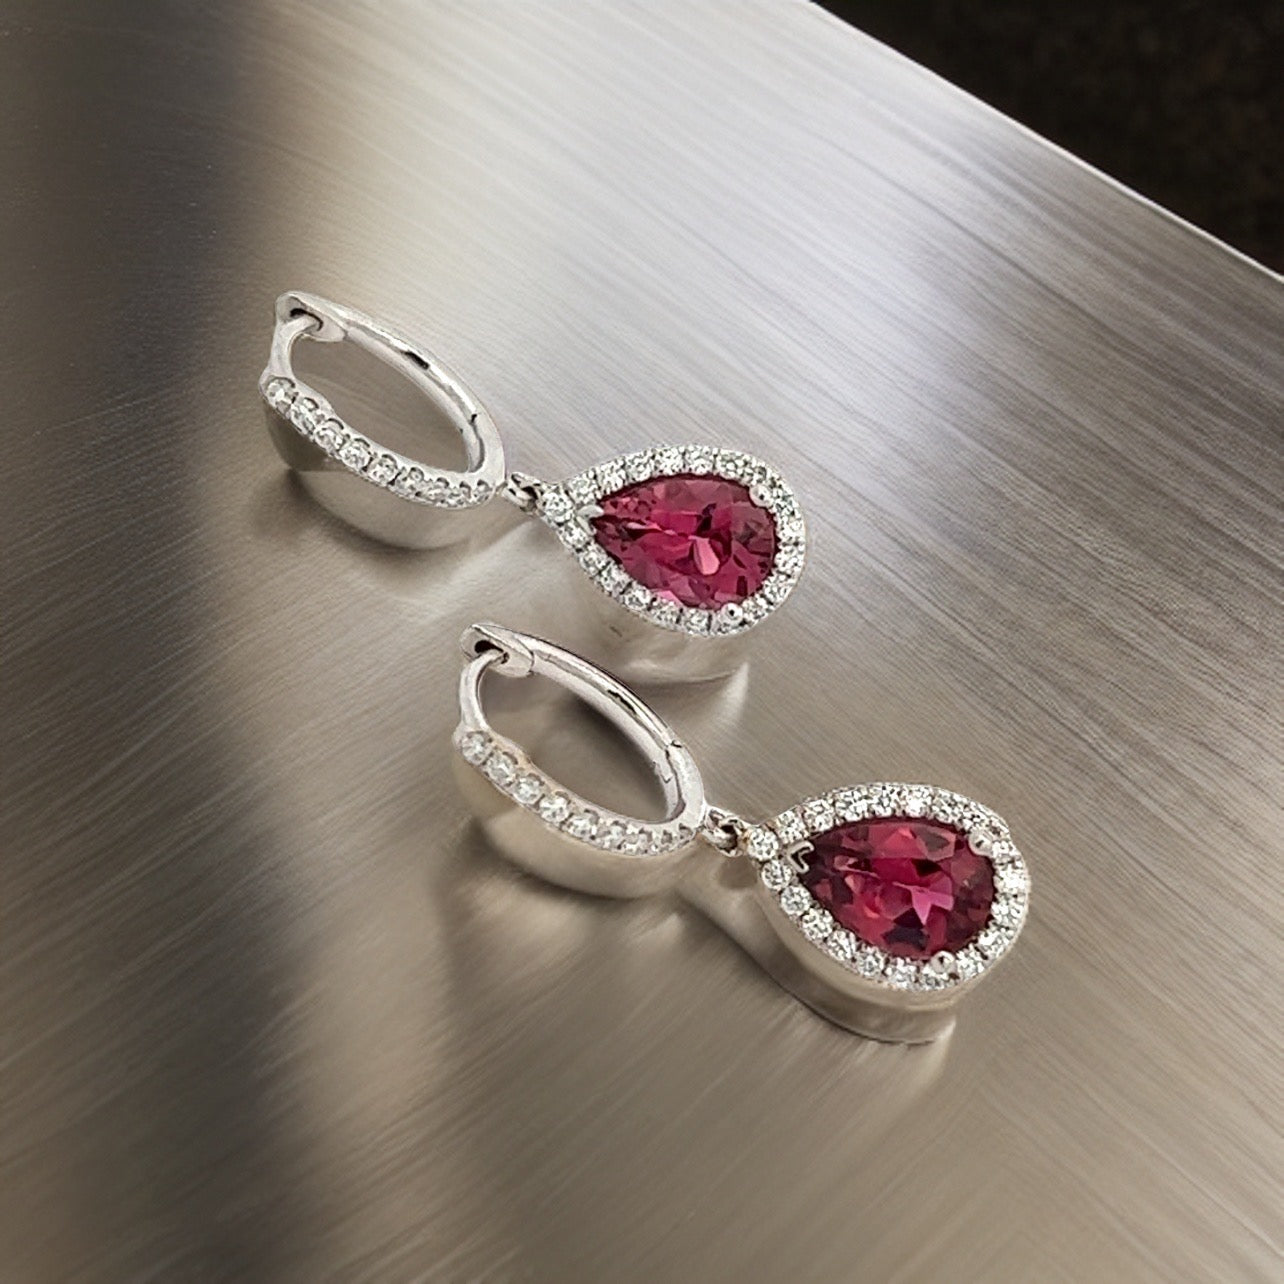 Diamond Rubellite Tourmaline Drop Earrings 18k W Gold 2.93 TCW Certified $5,950 210764 - Certified Fine Jewelry